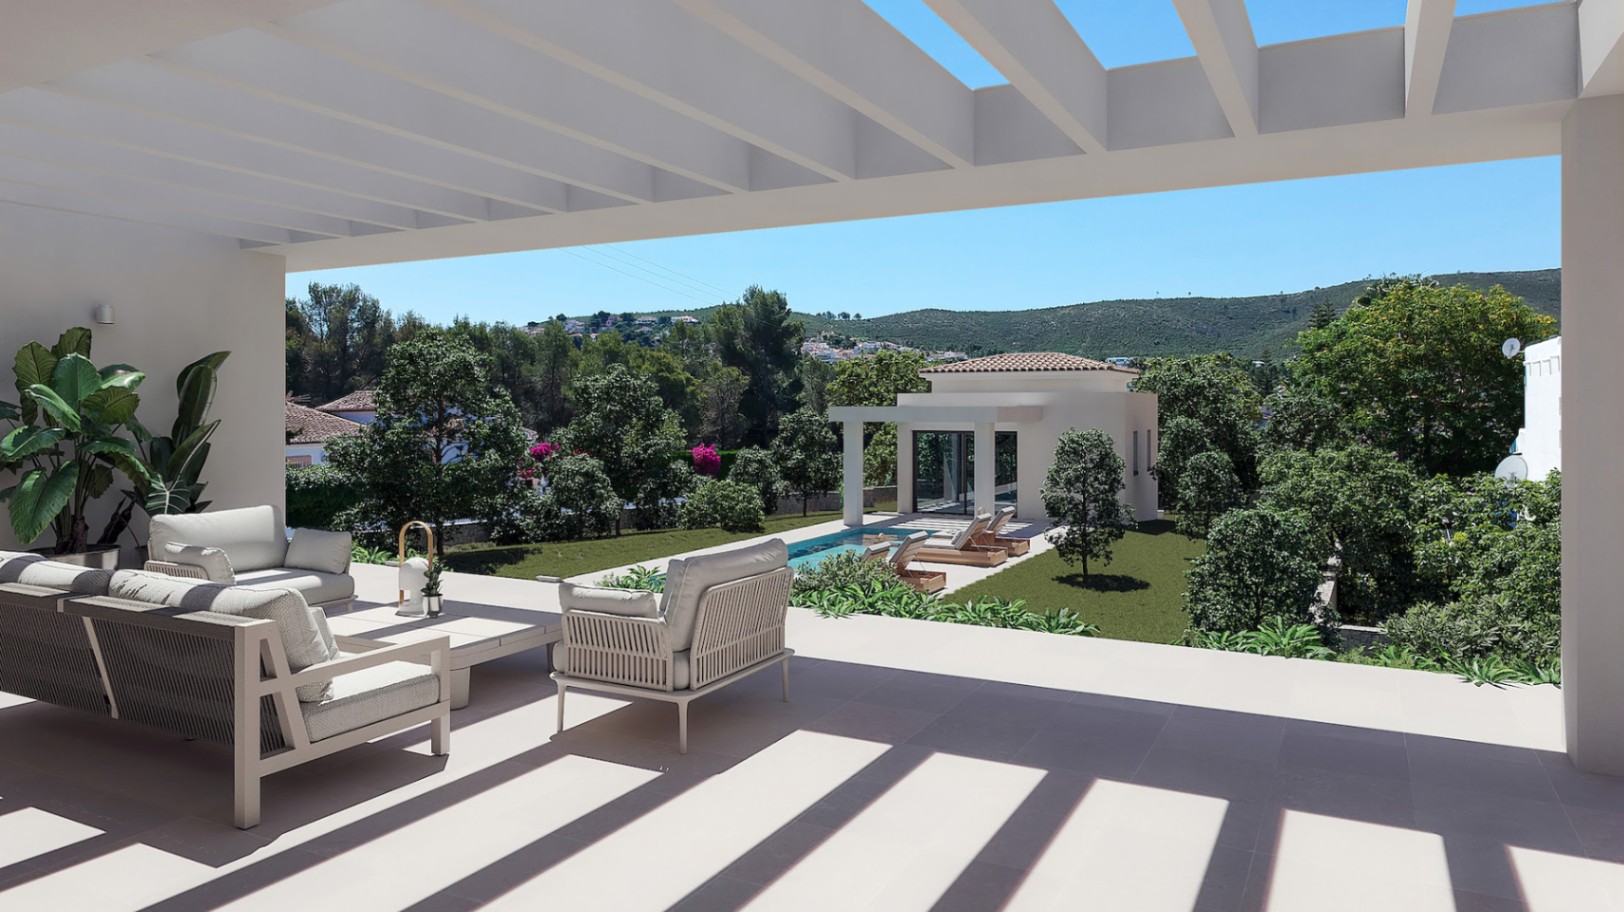 Project of modern villa in Javea